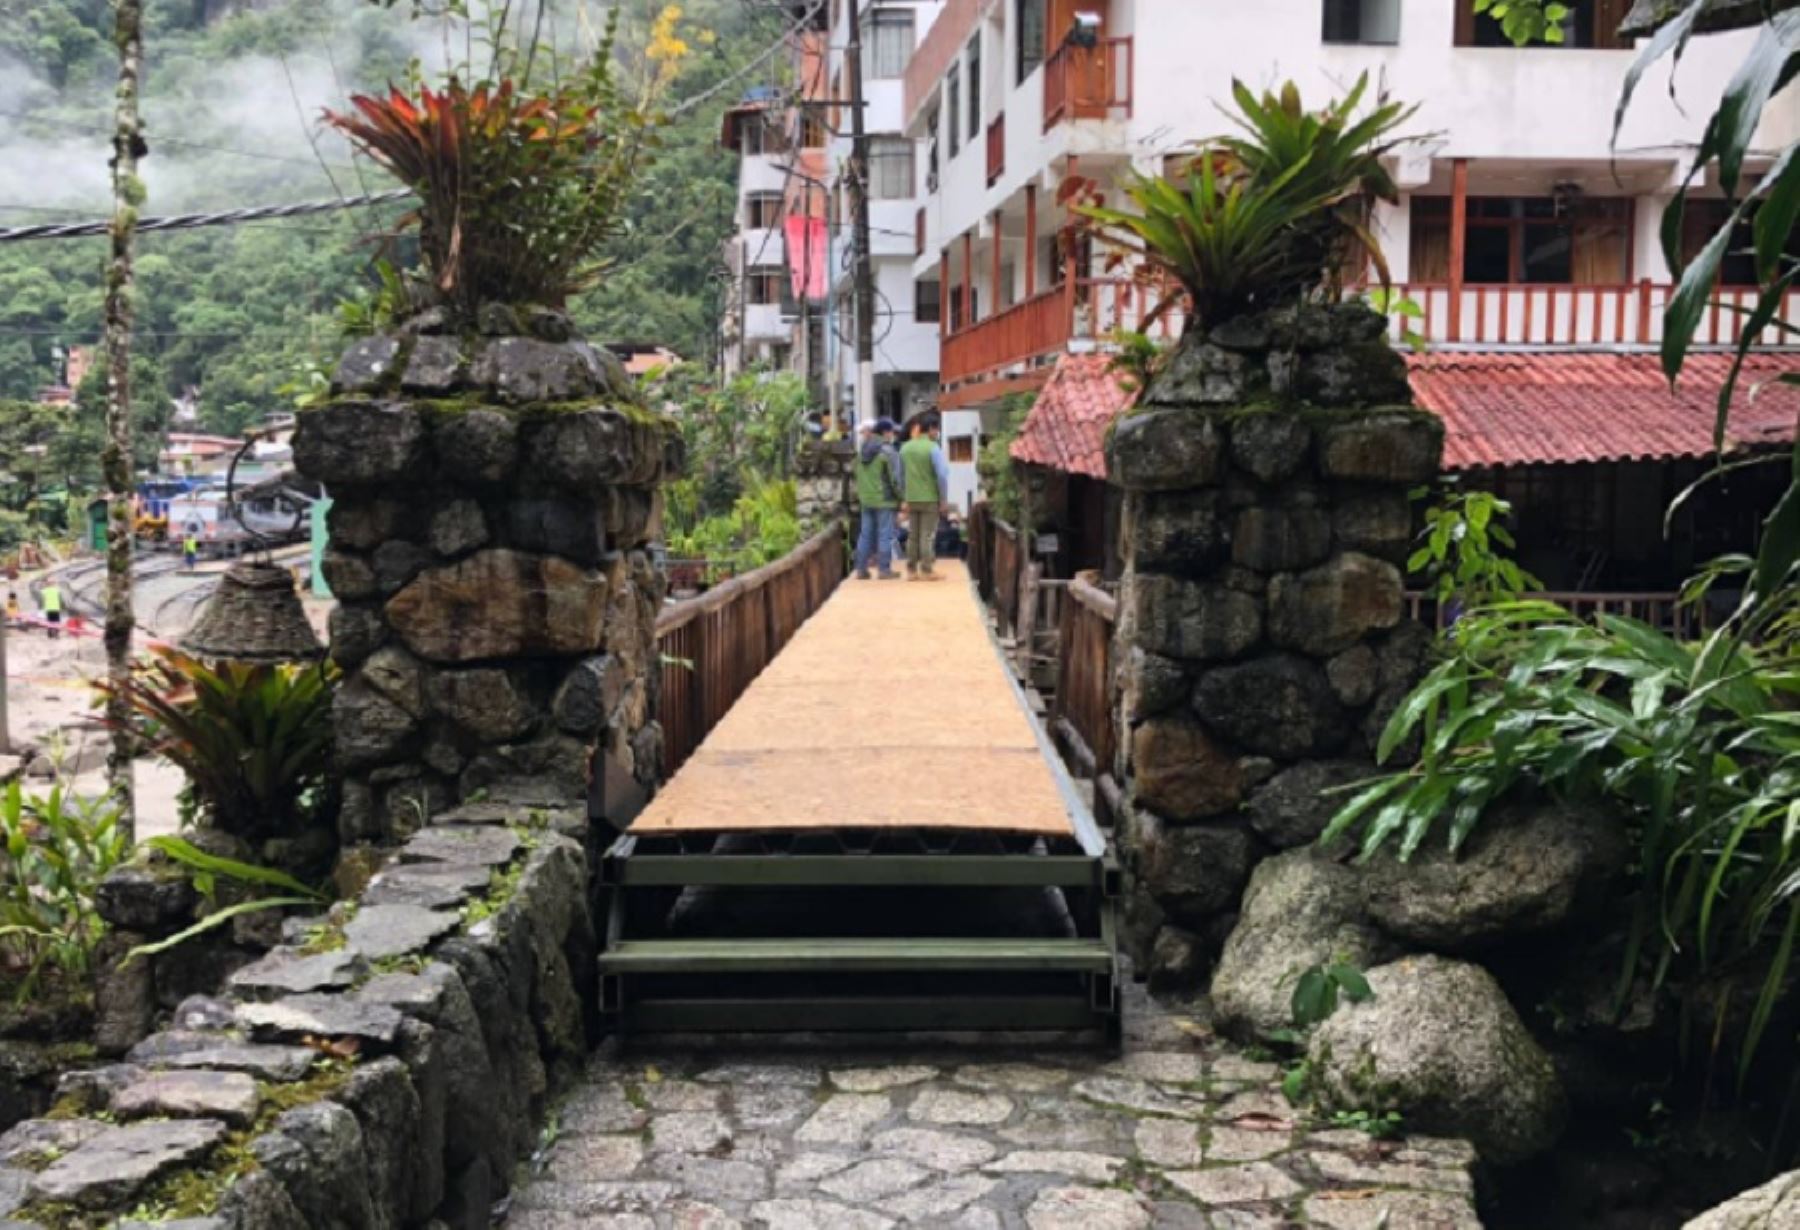 La Municipalidad Distrital de Machu Picchu informó que, a través del su Área de Mantenimiento, rehabilitó con infraestructura metálica el puente peatonal de madera destruido parcialmente por el huaico que cayó el viernes último. Ello con el objetivo de garantizar el tránsito seguro de turistas nacionales y extranjeros, así como de la población local.